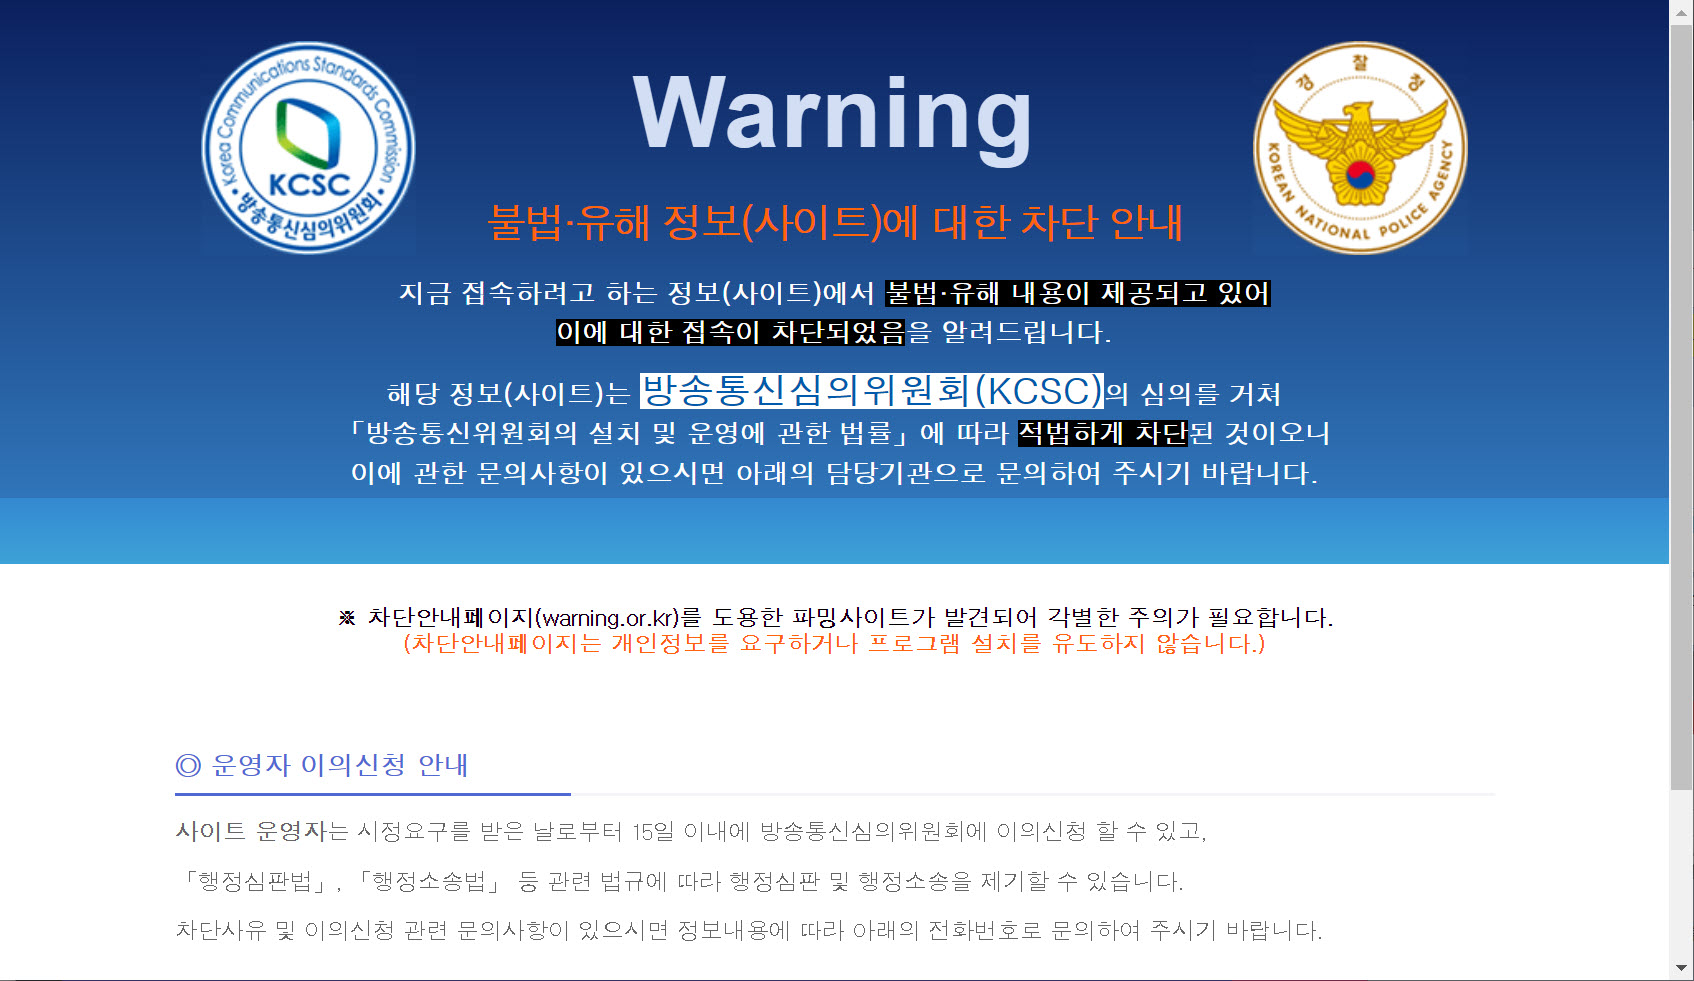 불법·유해 정보 사이트 차단 경고